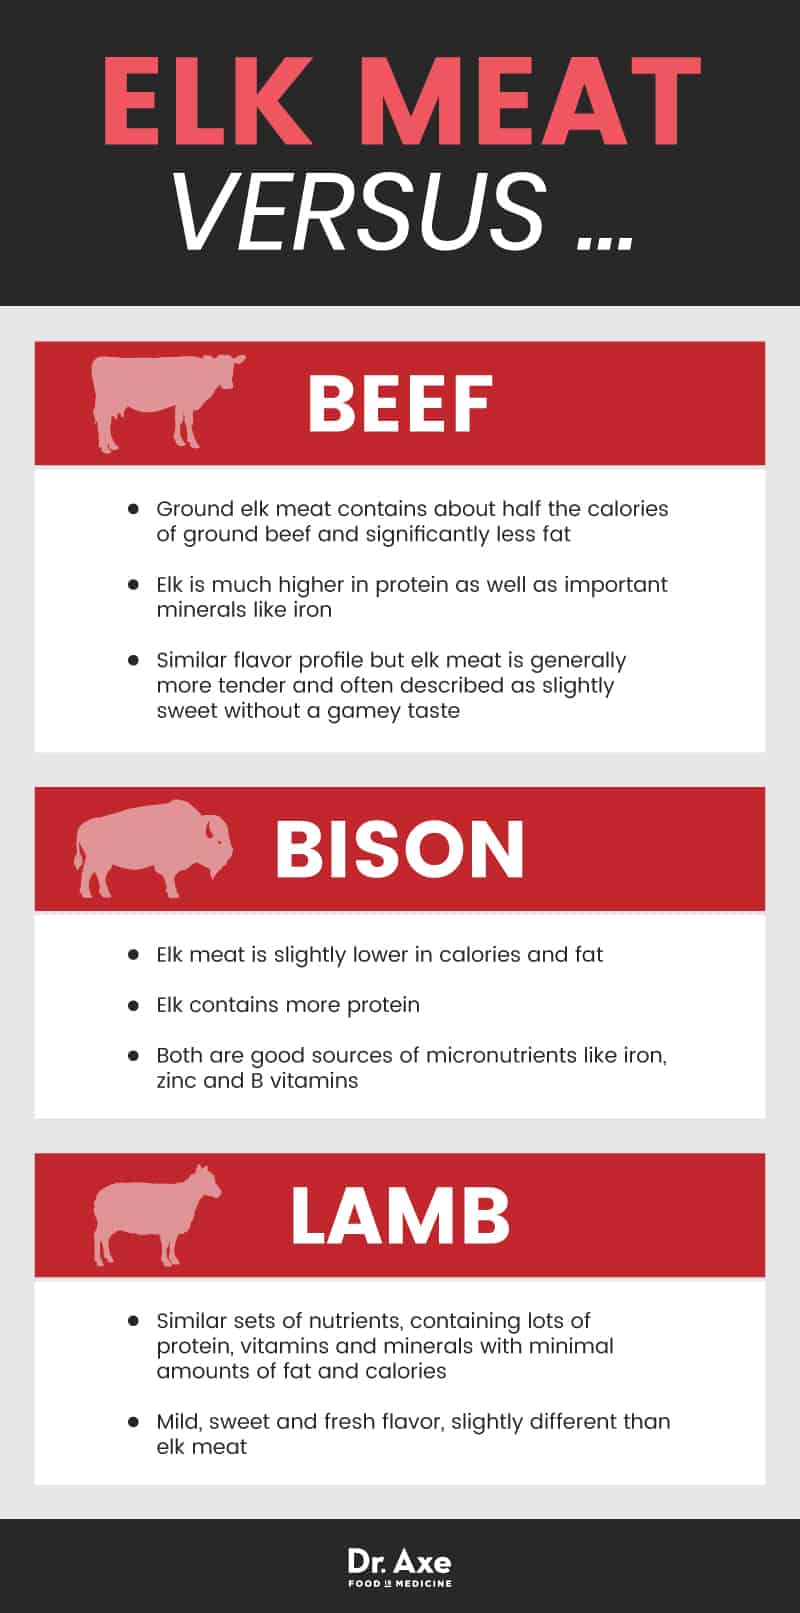 Elk meat vs. beef - Dr. Axe